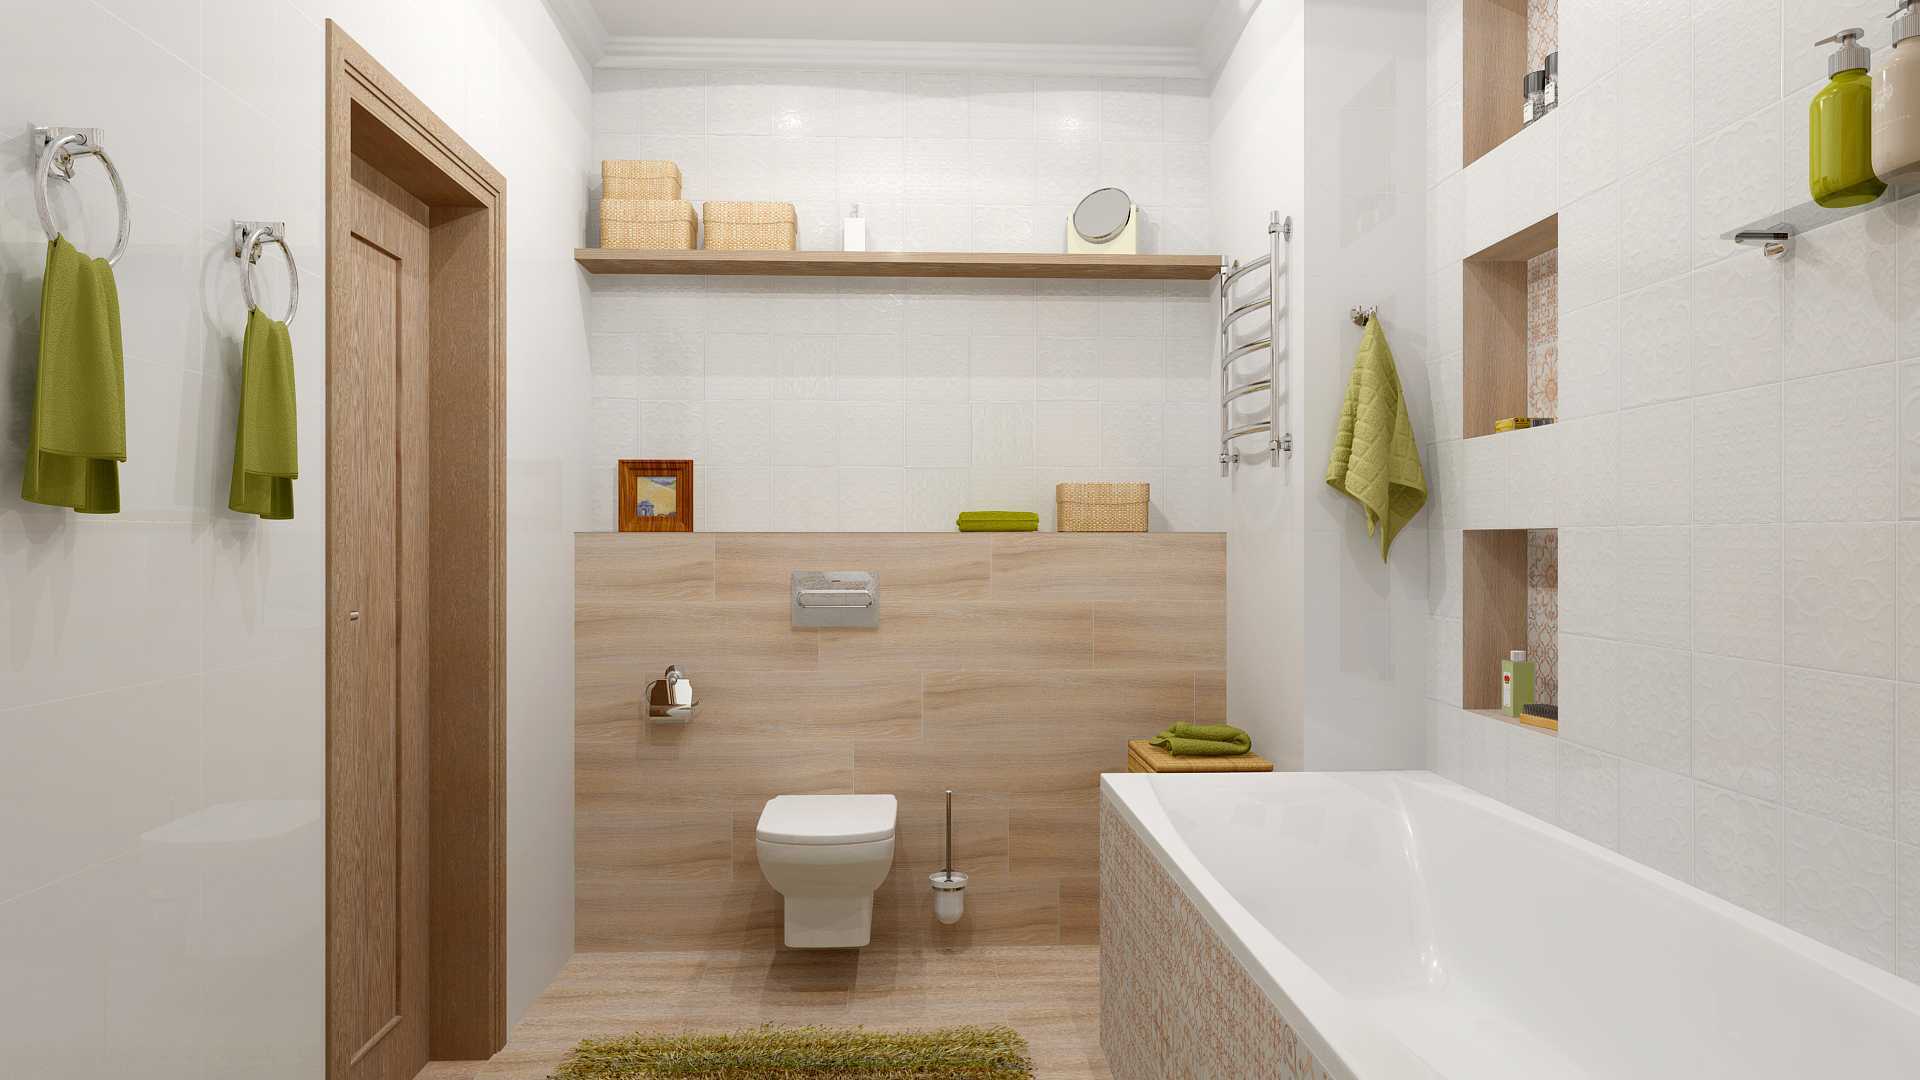 Ремонт ванной комнаты: последовательность работ, план, фото